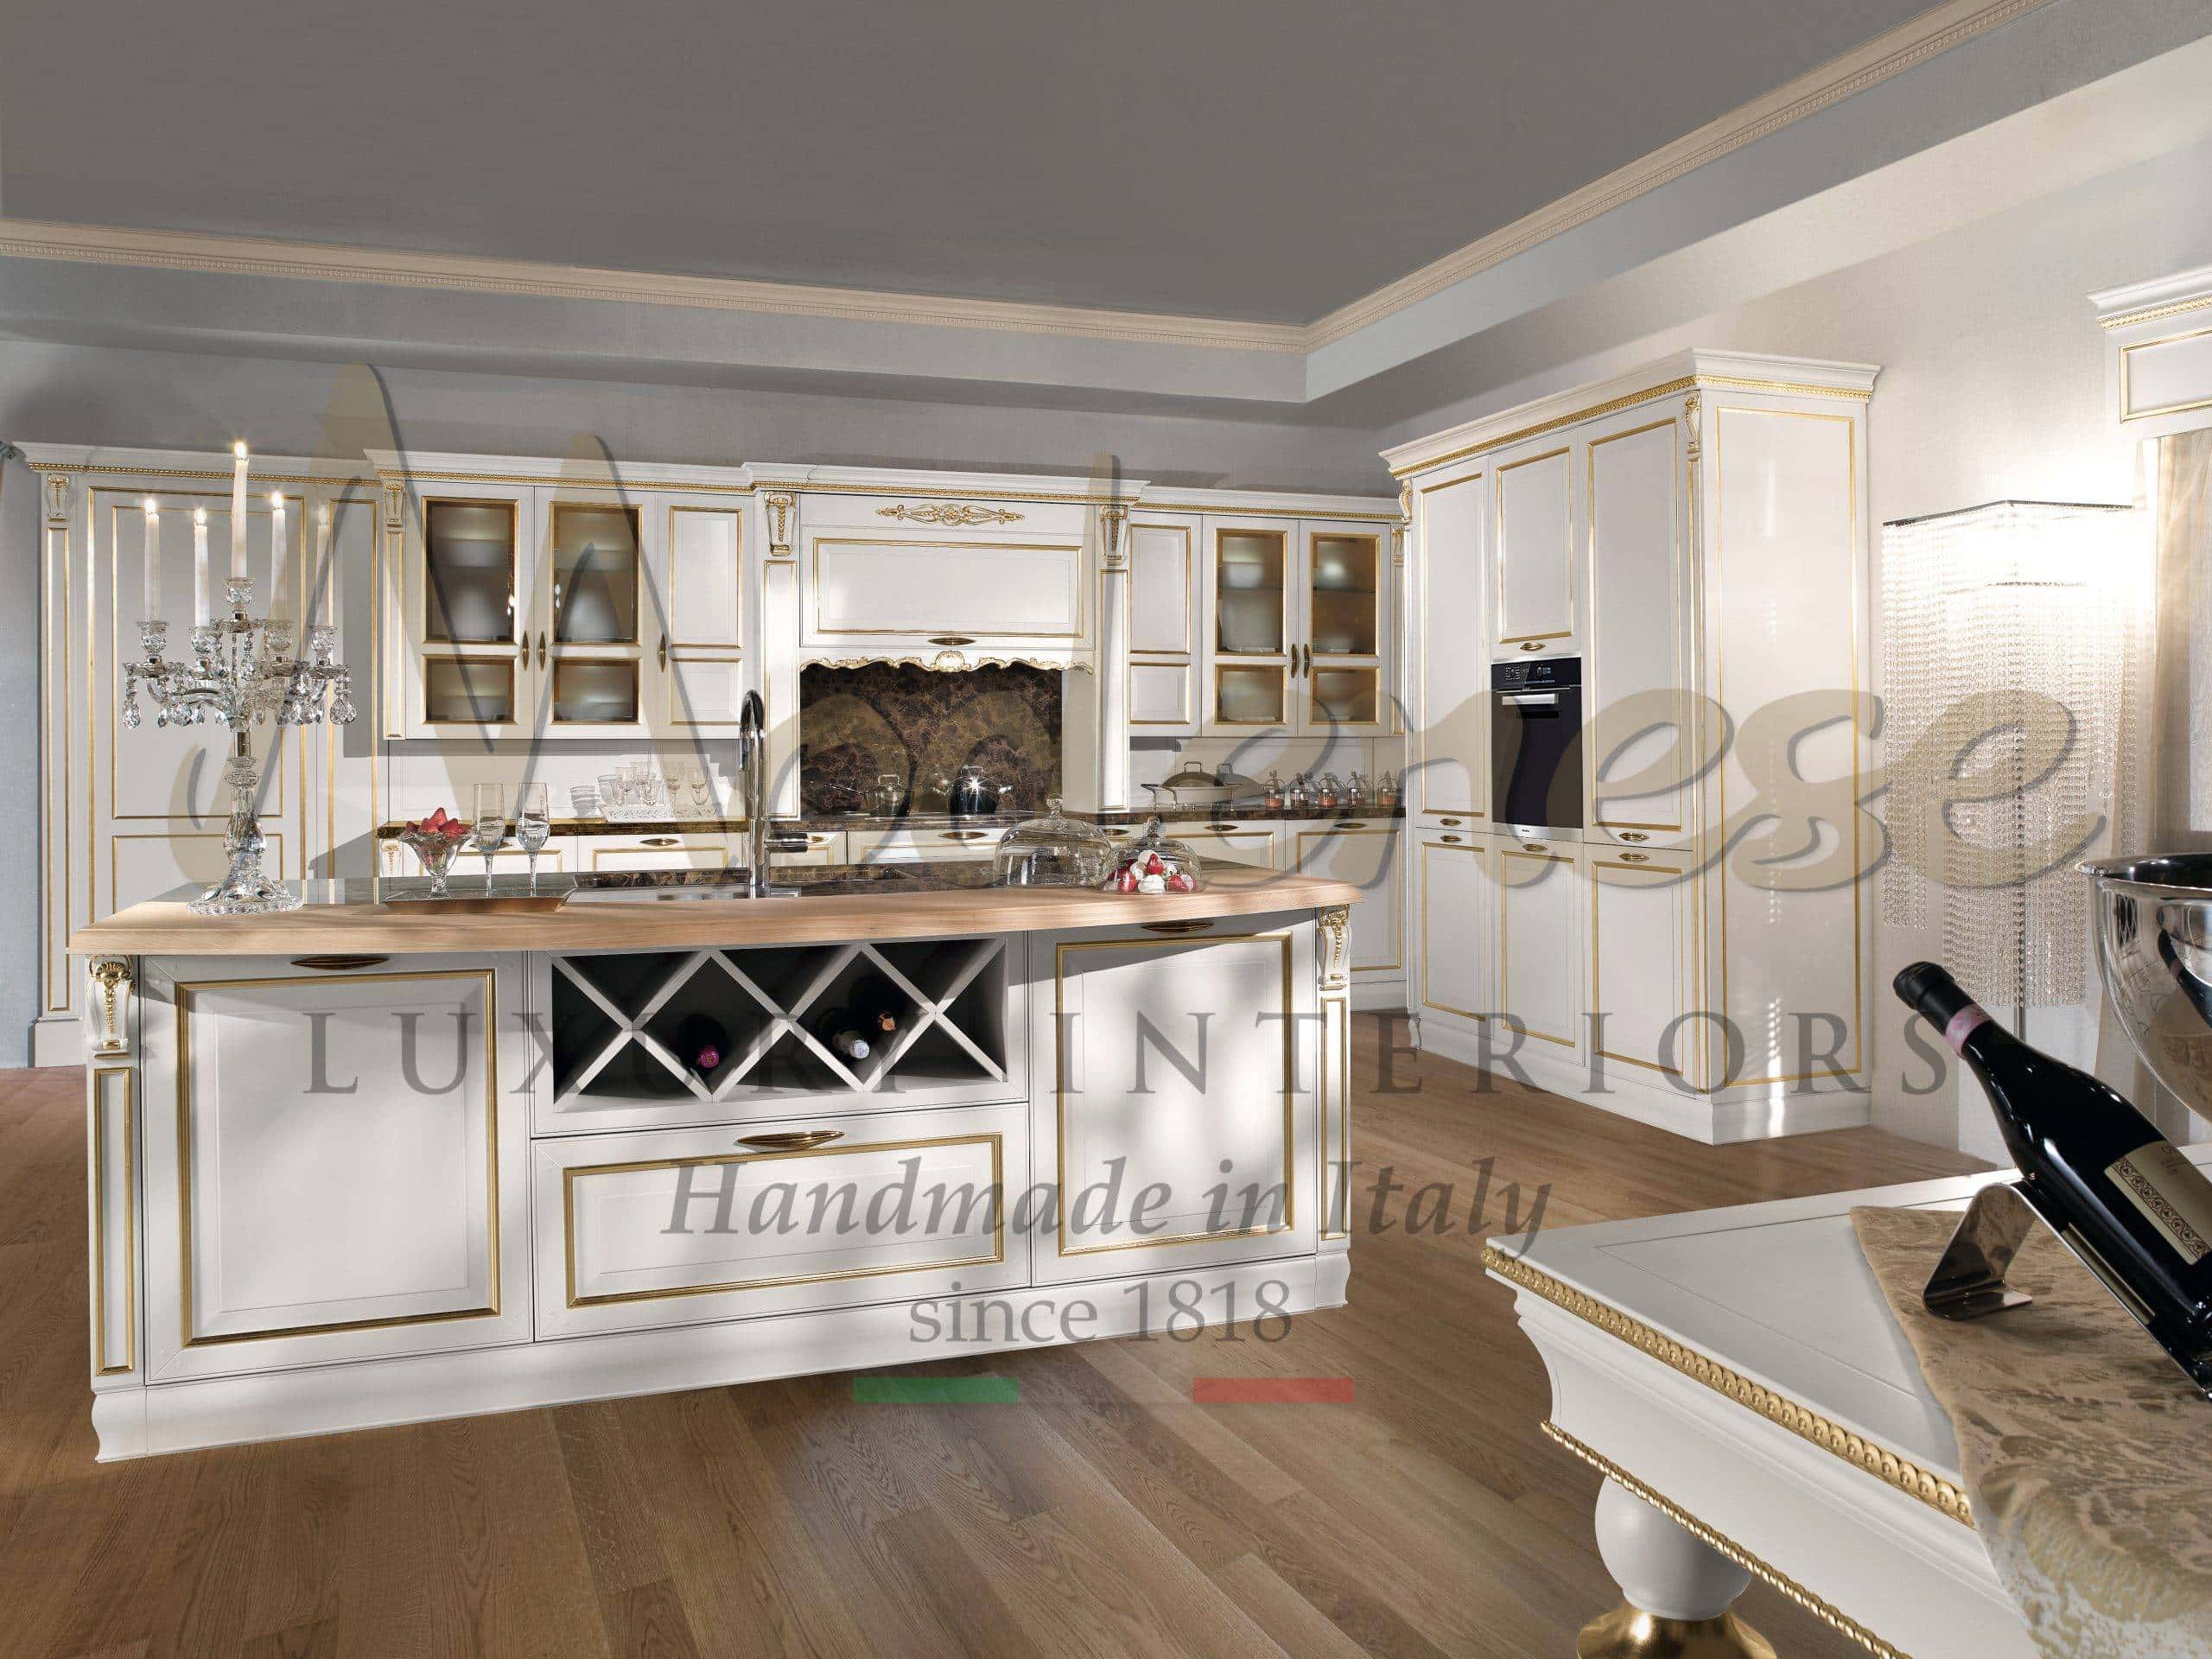 永恒传统厨房室内设计项目装修理念 经典风格巴洛克金叶实木意大利品质法式优雅风格的固定家具